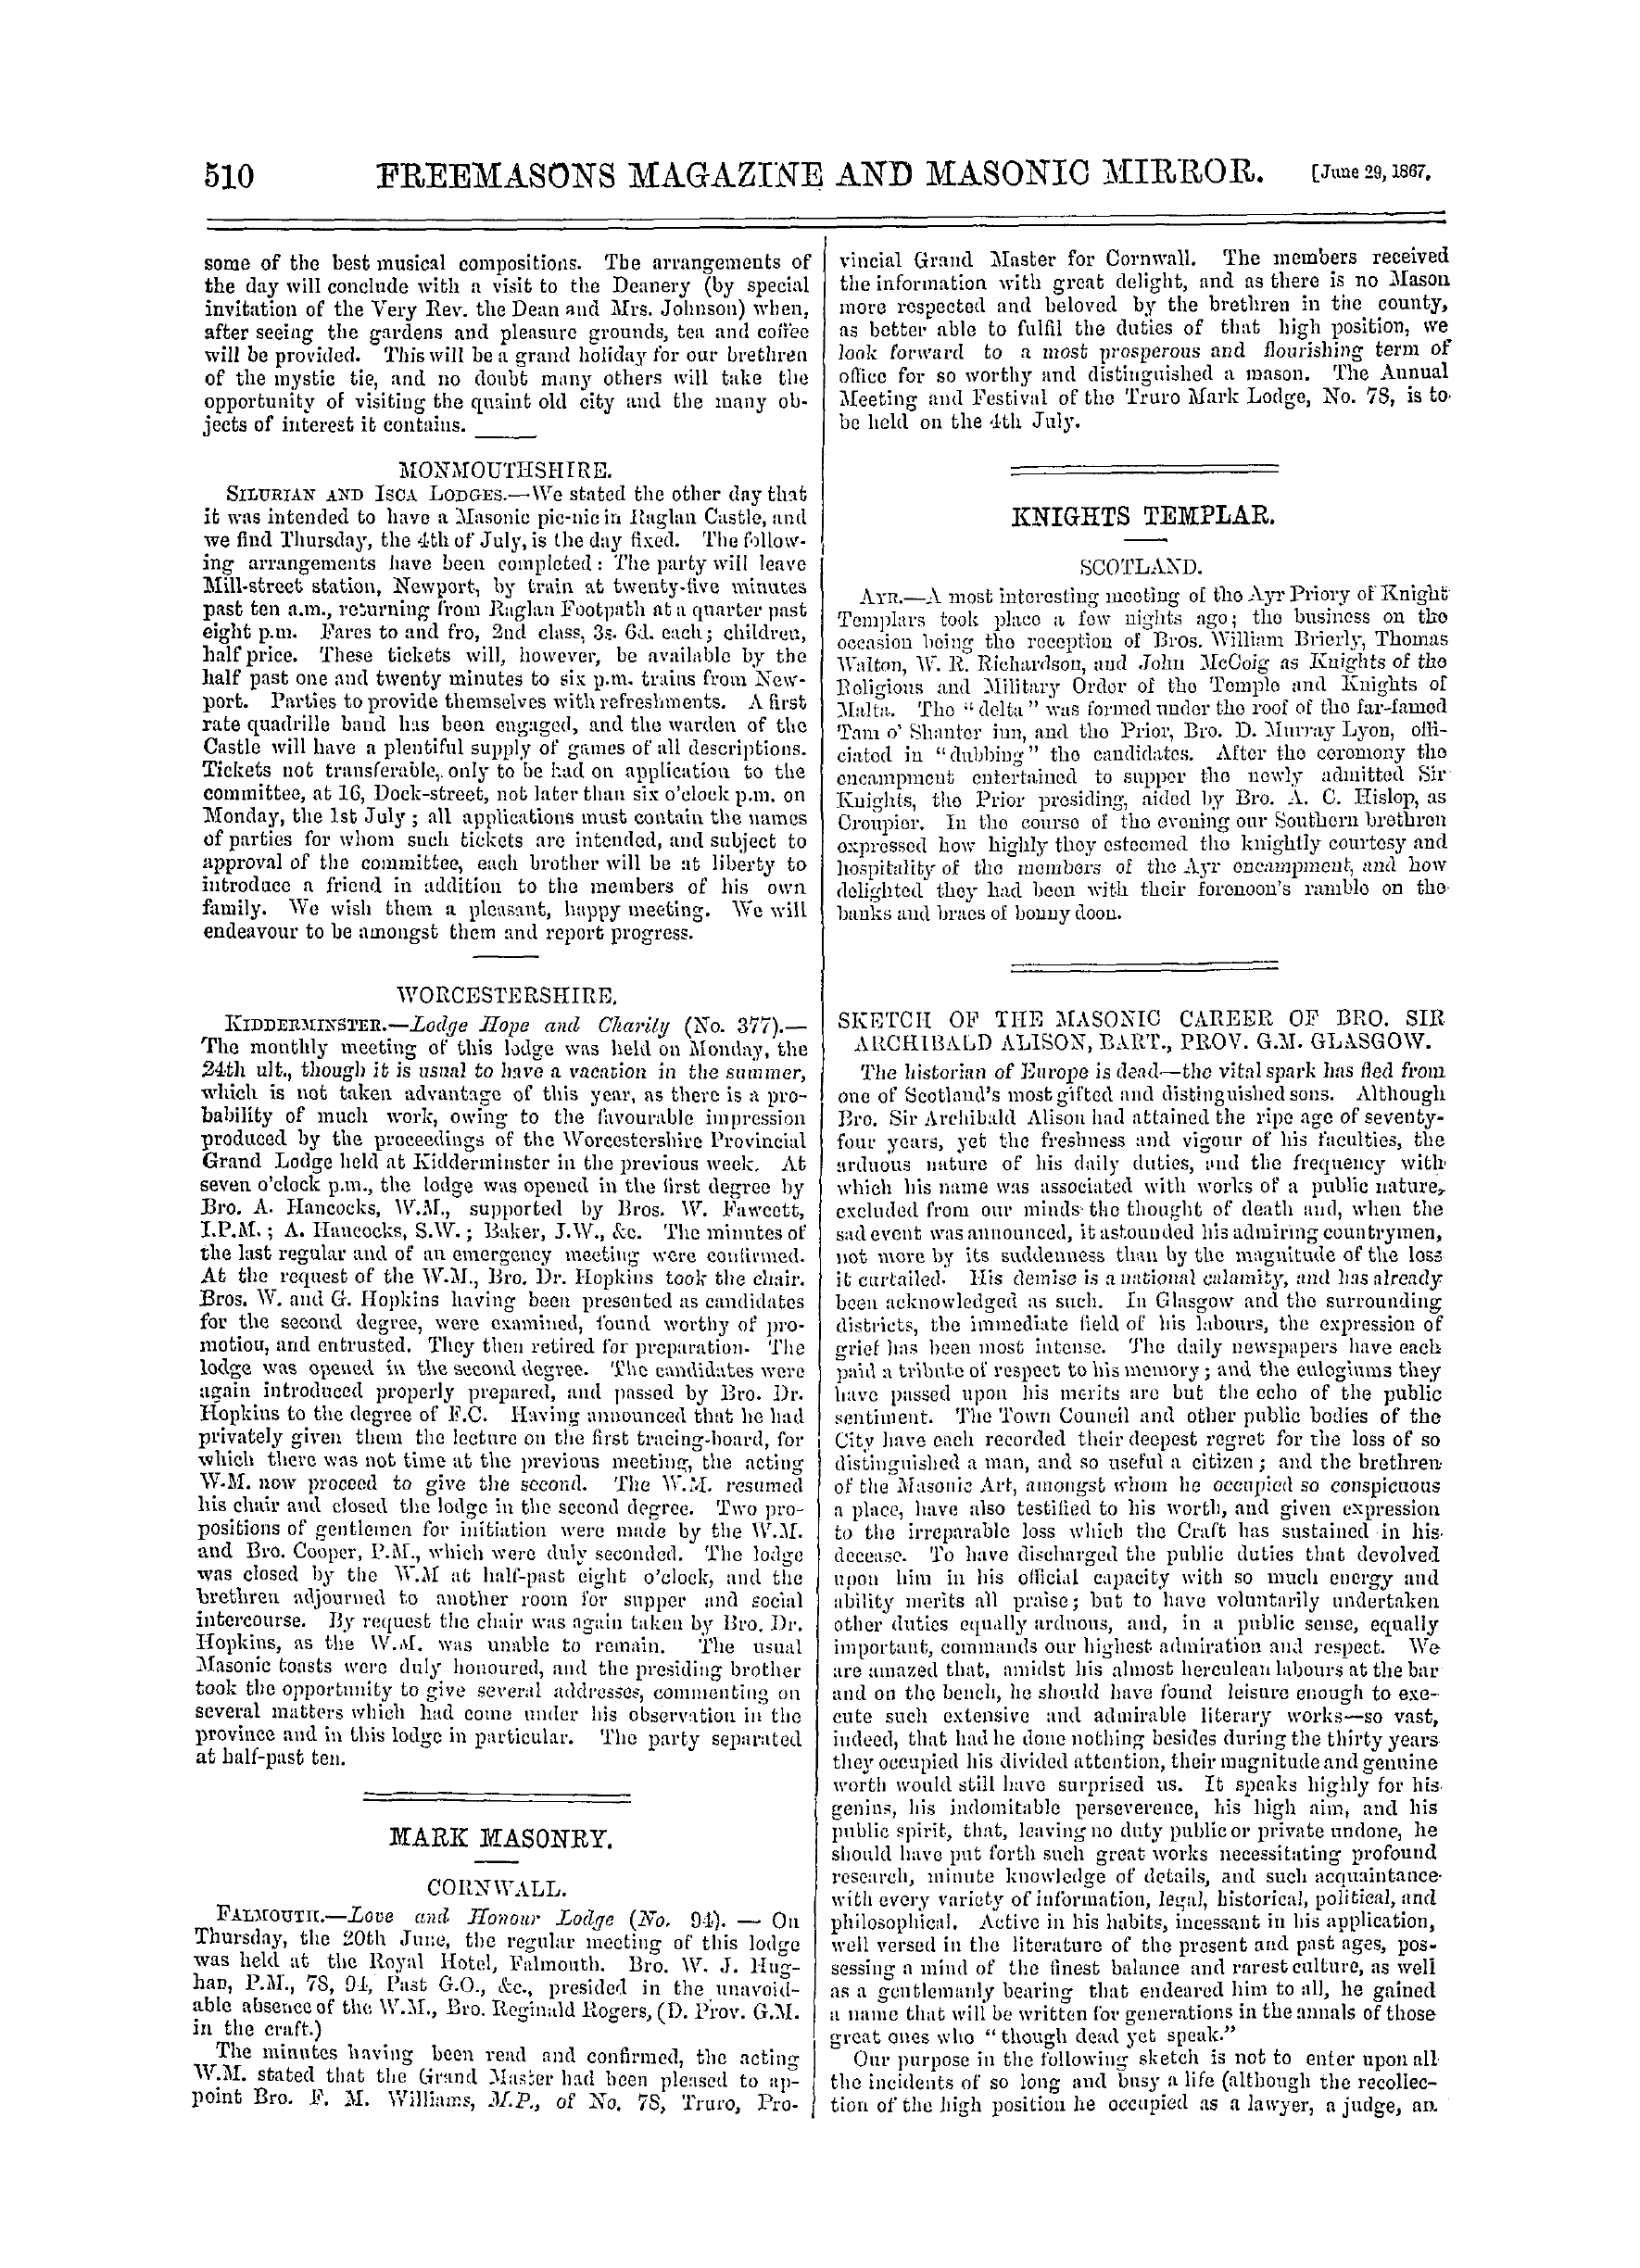 The Freemasons' Monthly Magazine: 1867-06-29: 10